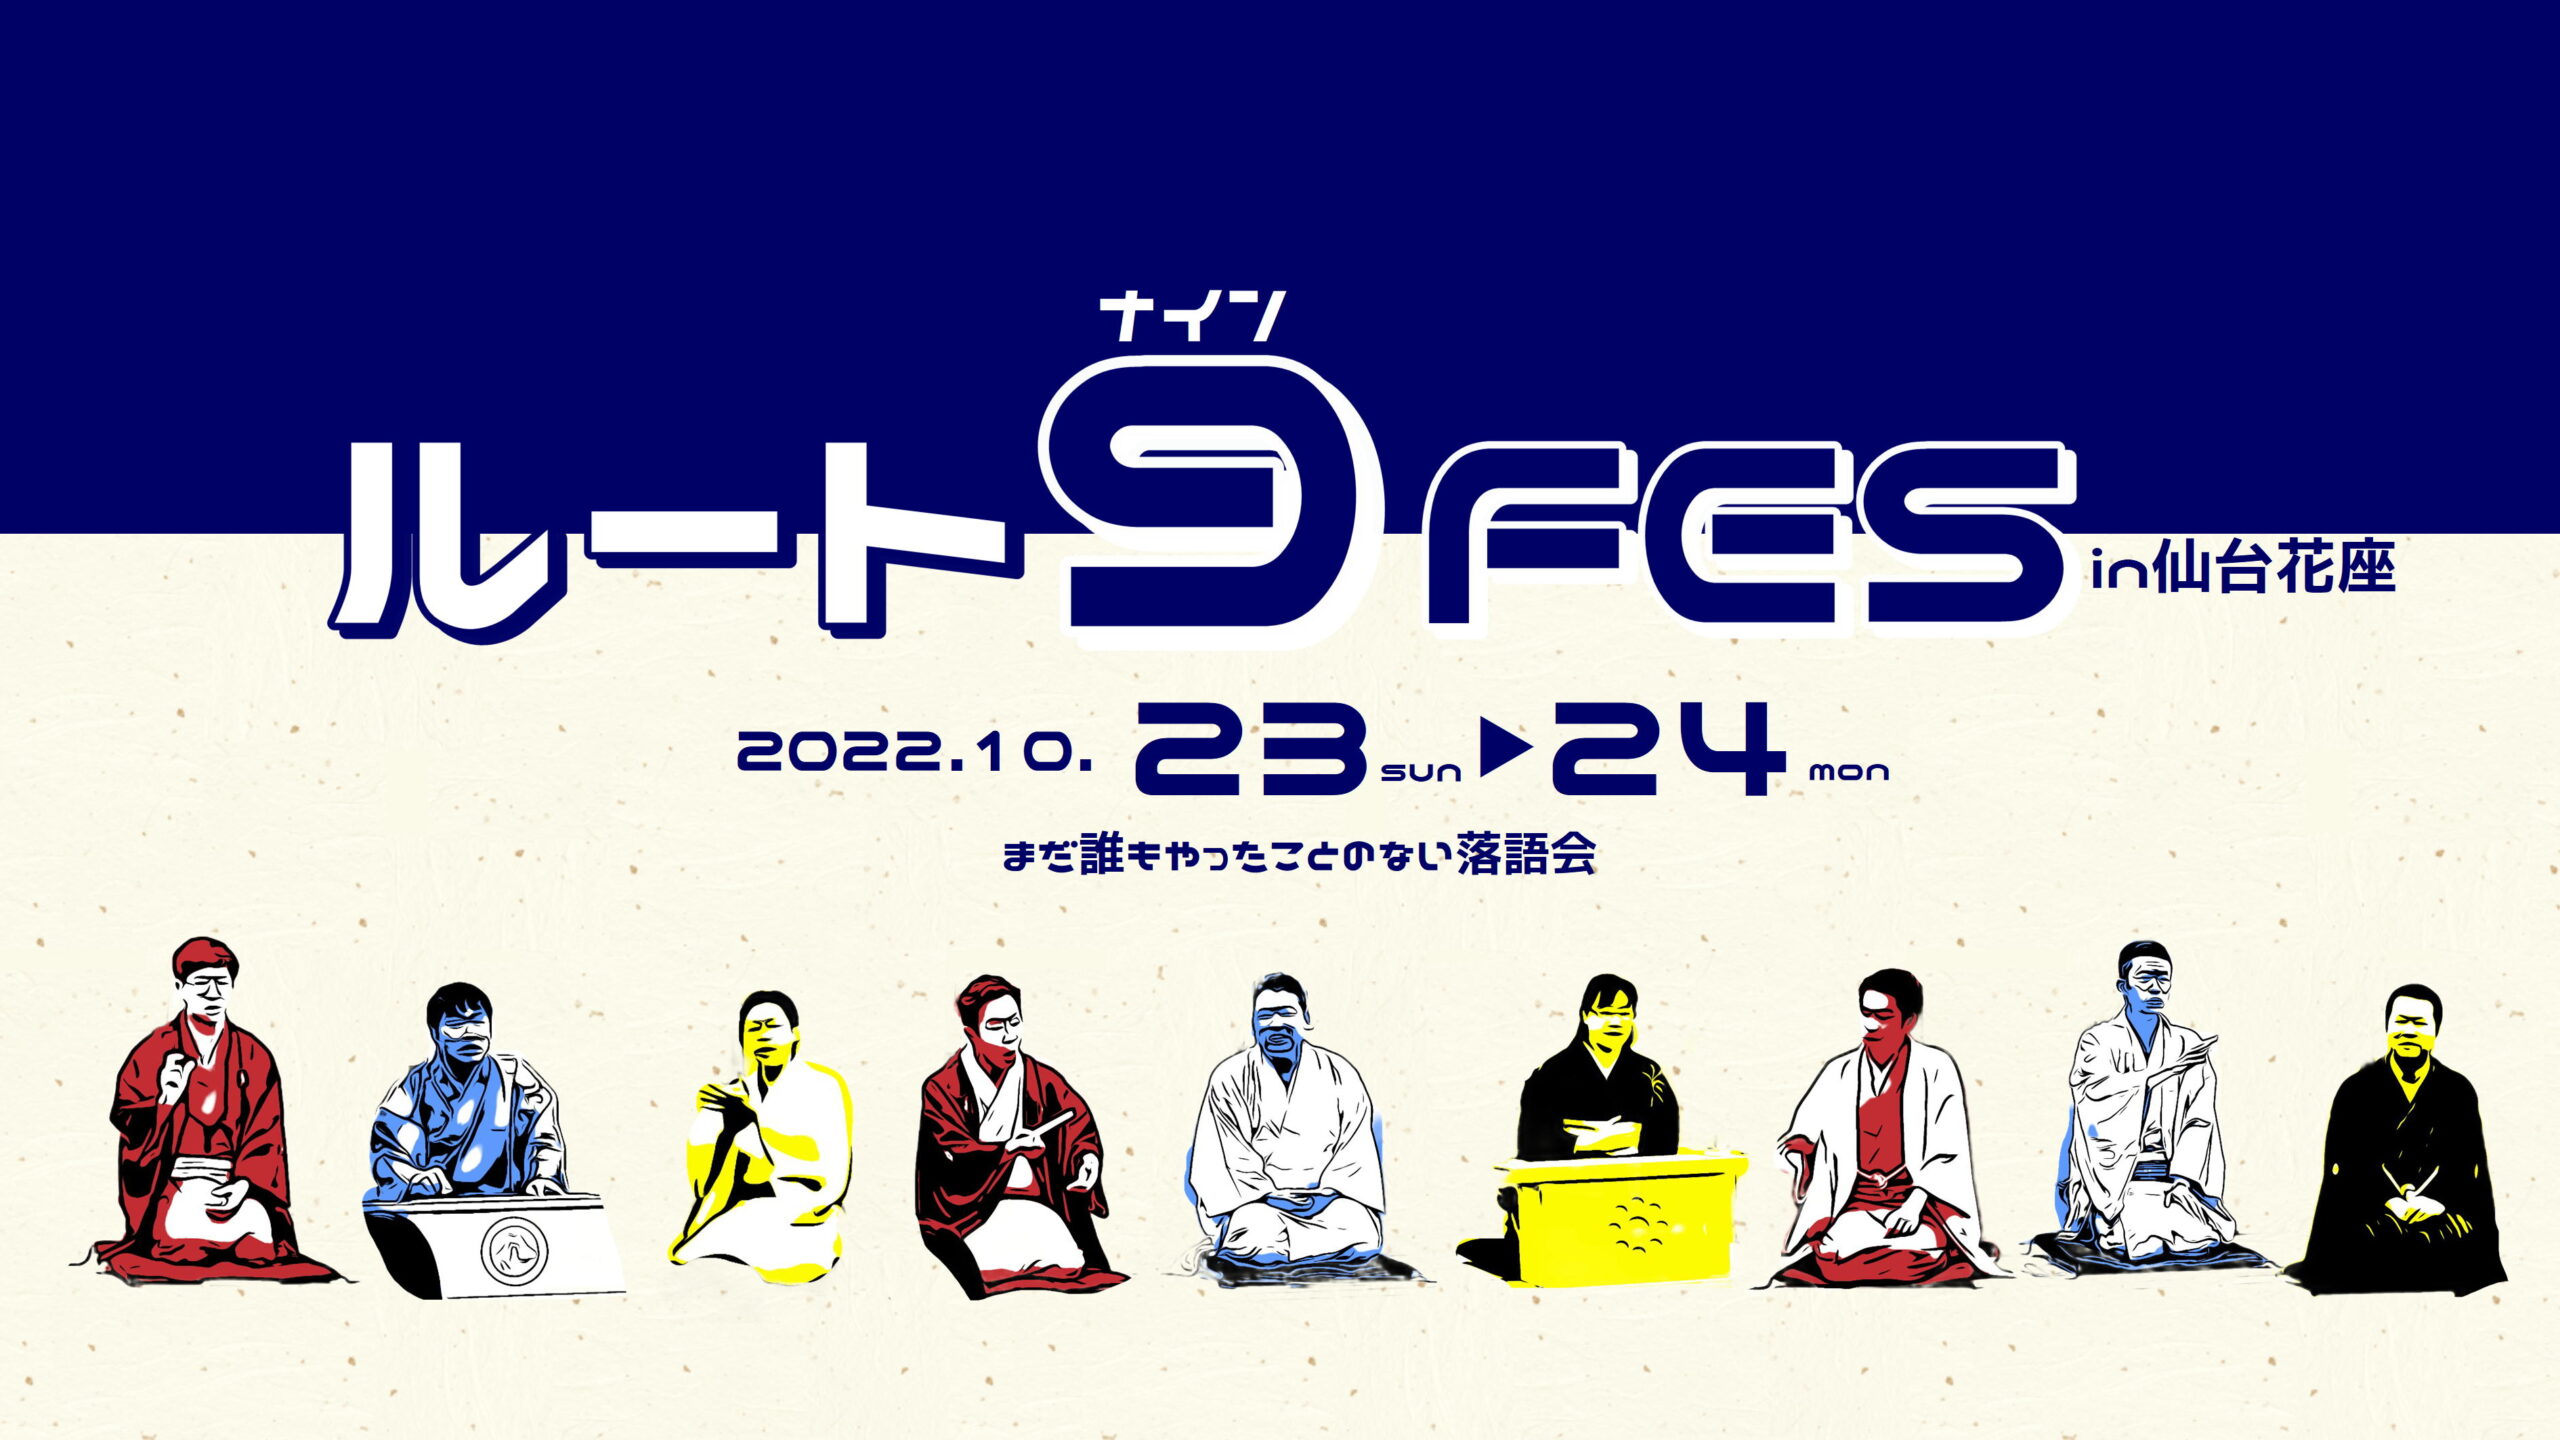 2022年10月23日・24日 『ルート9FES in仙台花座』開催! | 花座 | 魅知